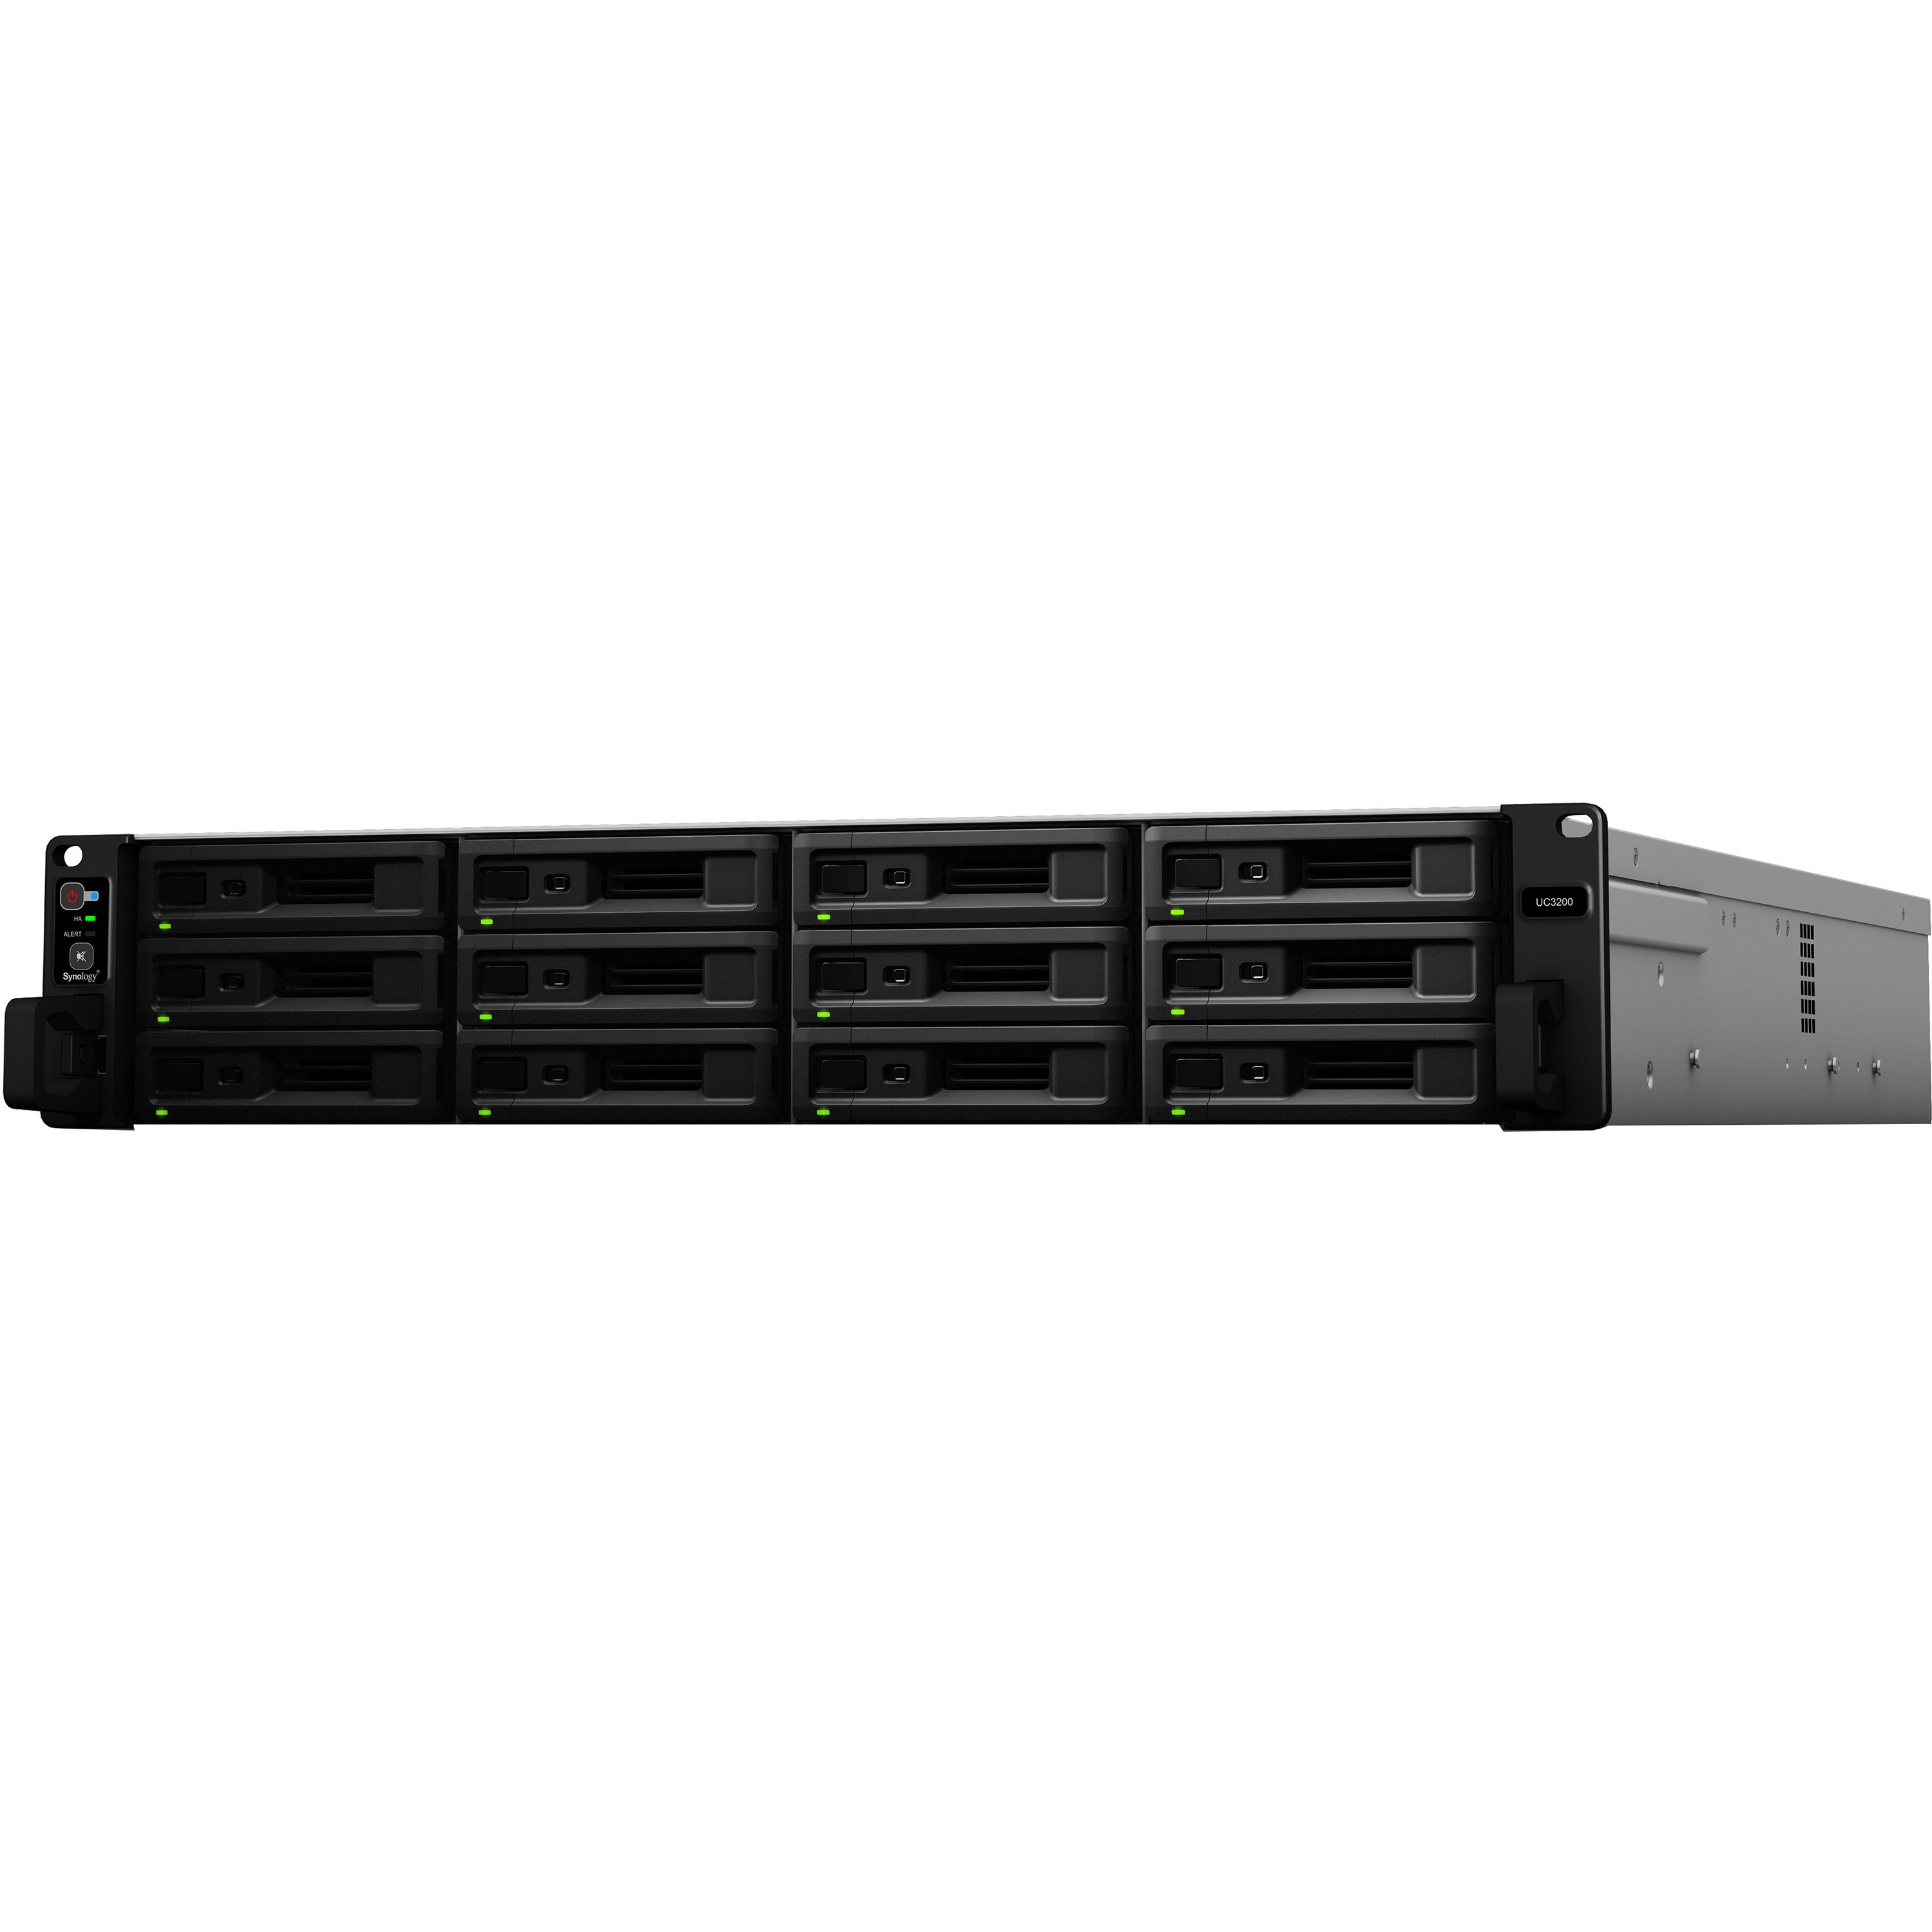  Stockage réseaux Serveur NAS Entreprise UC3200 SAS 12 baies